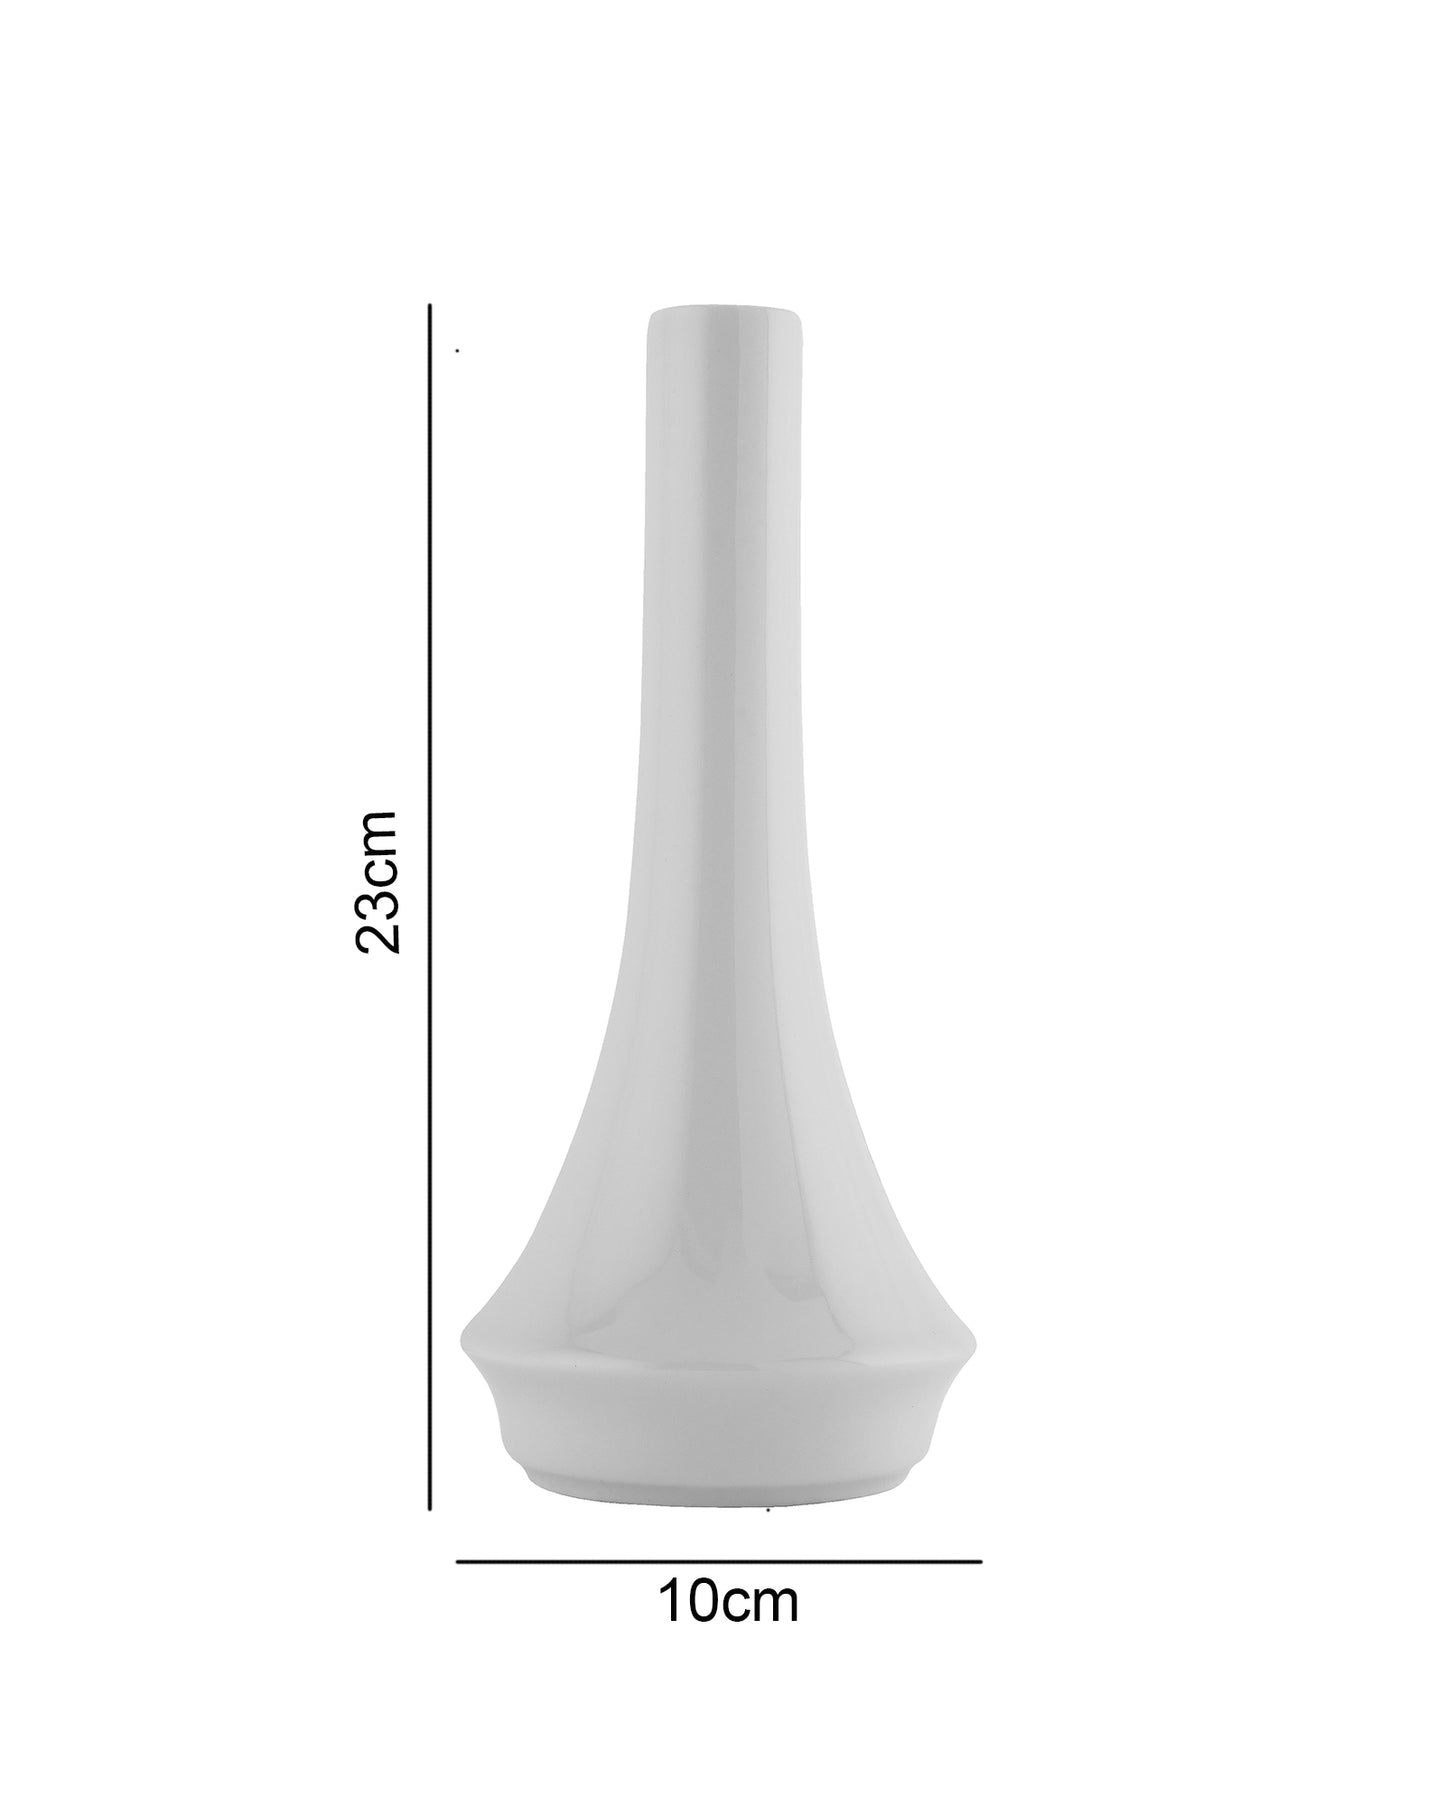 Fine Porcelain Flower Vase, White, Single